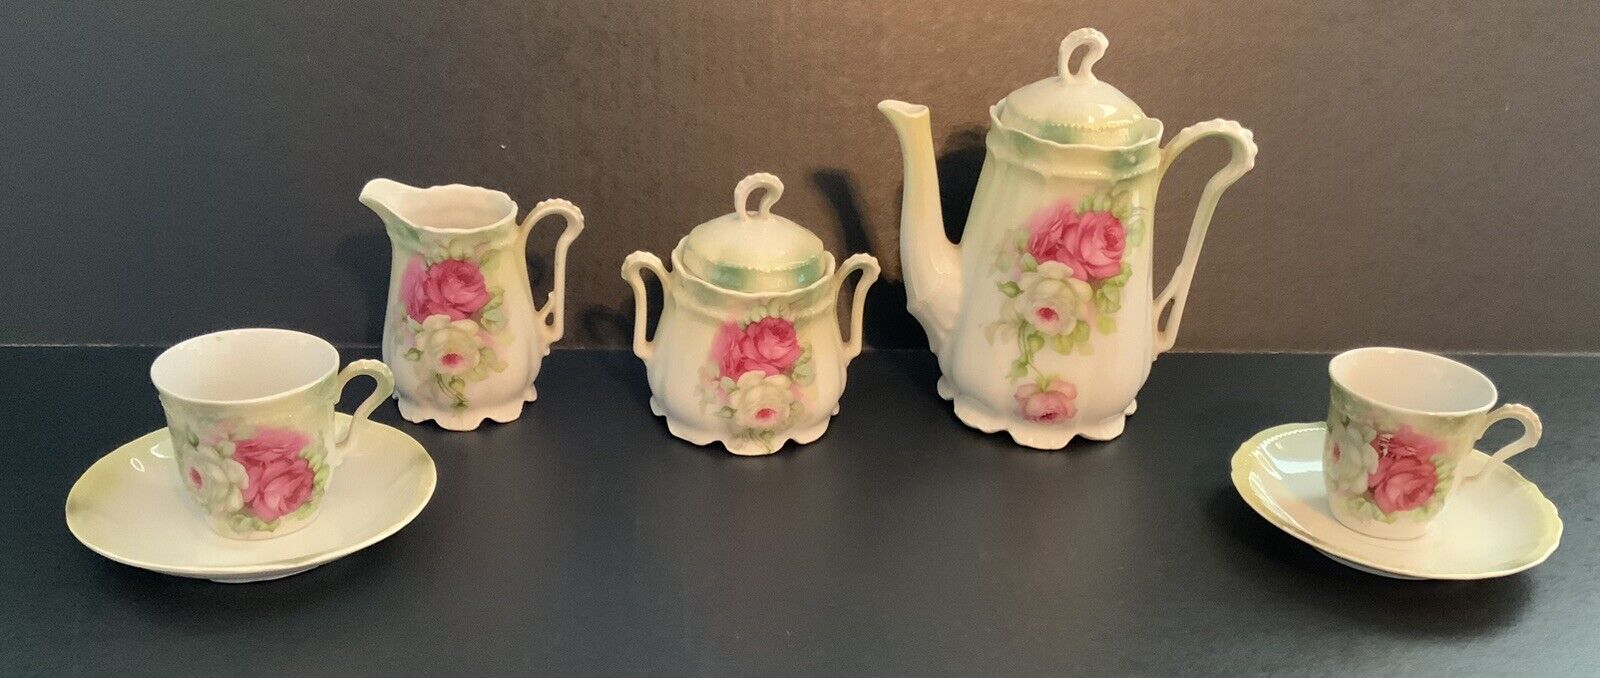 9 PCS Antique German Porcelain Victorian Pink Roses Scallop base Tea Set; 2 Lids